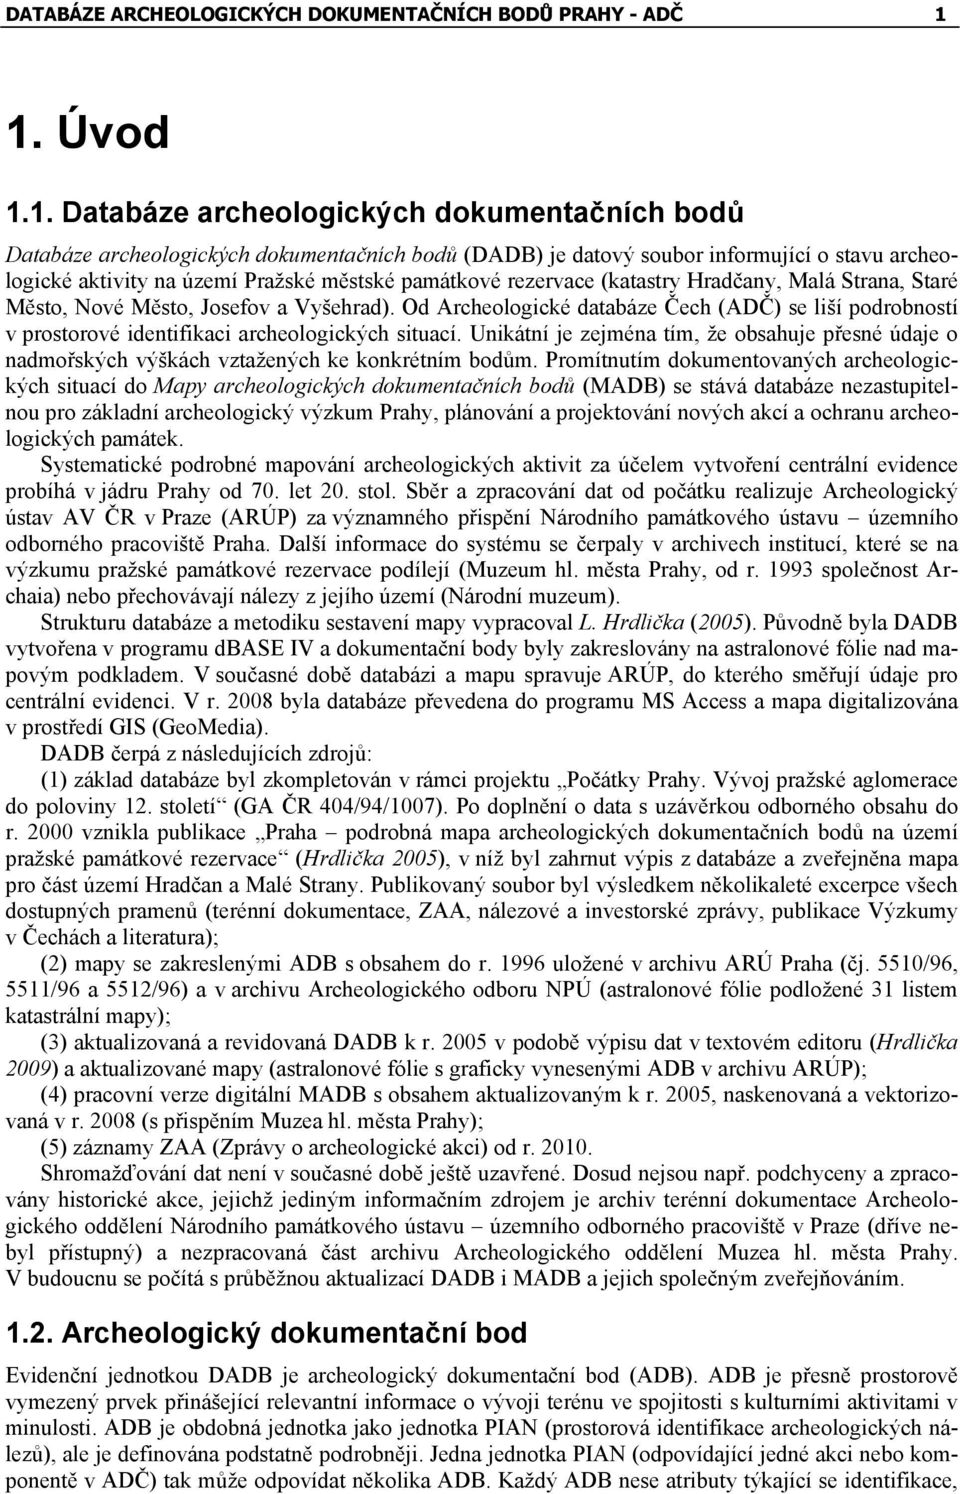 památkové rezervace (katastry Hradčany, Malá Strana, Staré Město, Nové Město, Josefov a Vyšehrad).